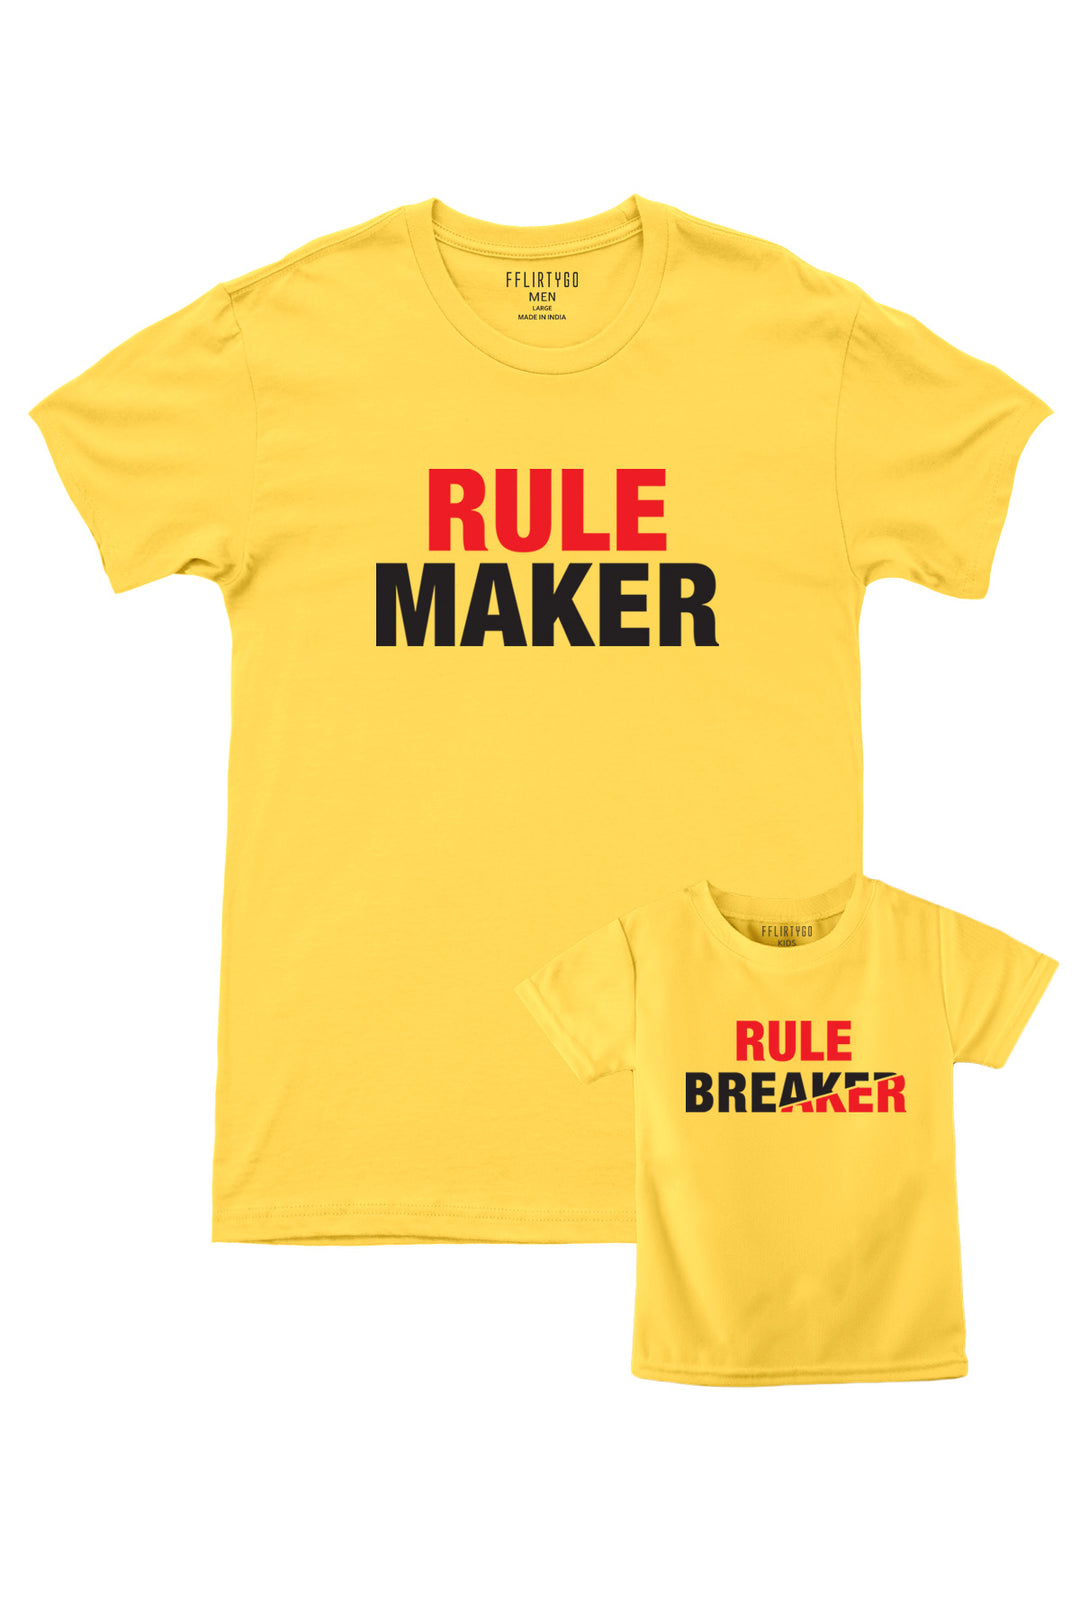 Rule Maker, Rule Breaker